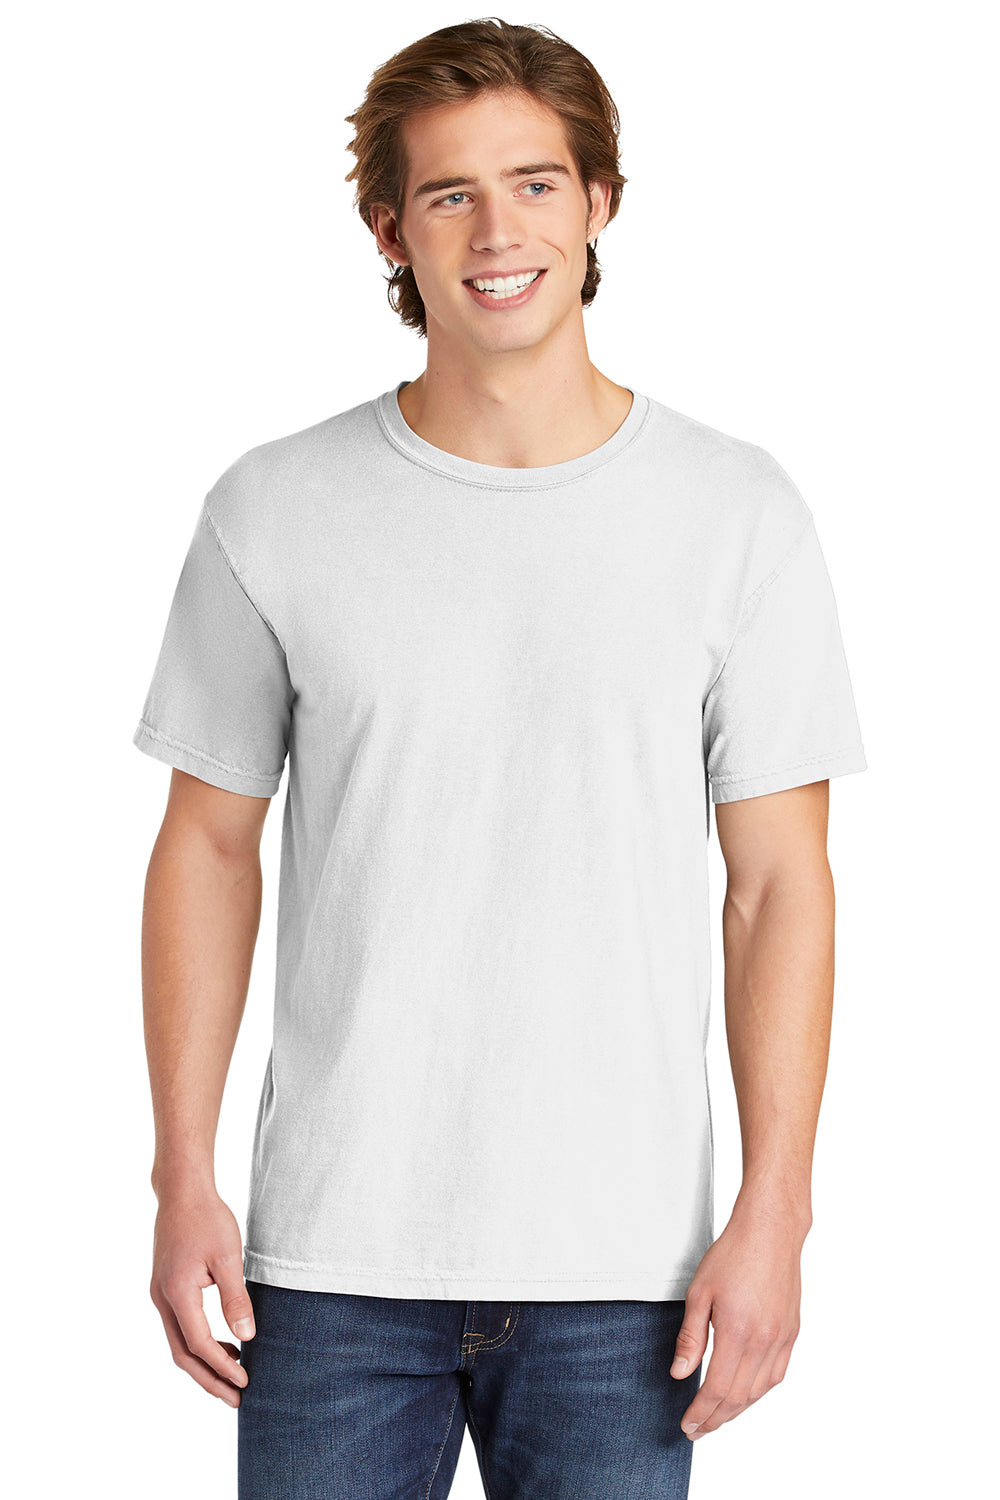 Comfort Colors Mens Short Sleeve Crewneck T-Shirt - Pepper Grey